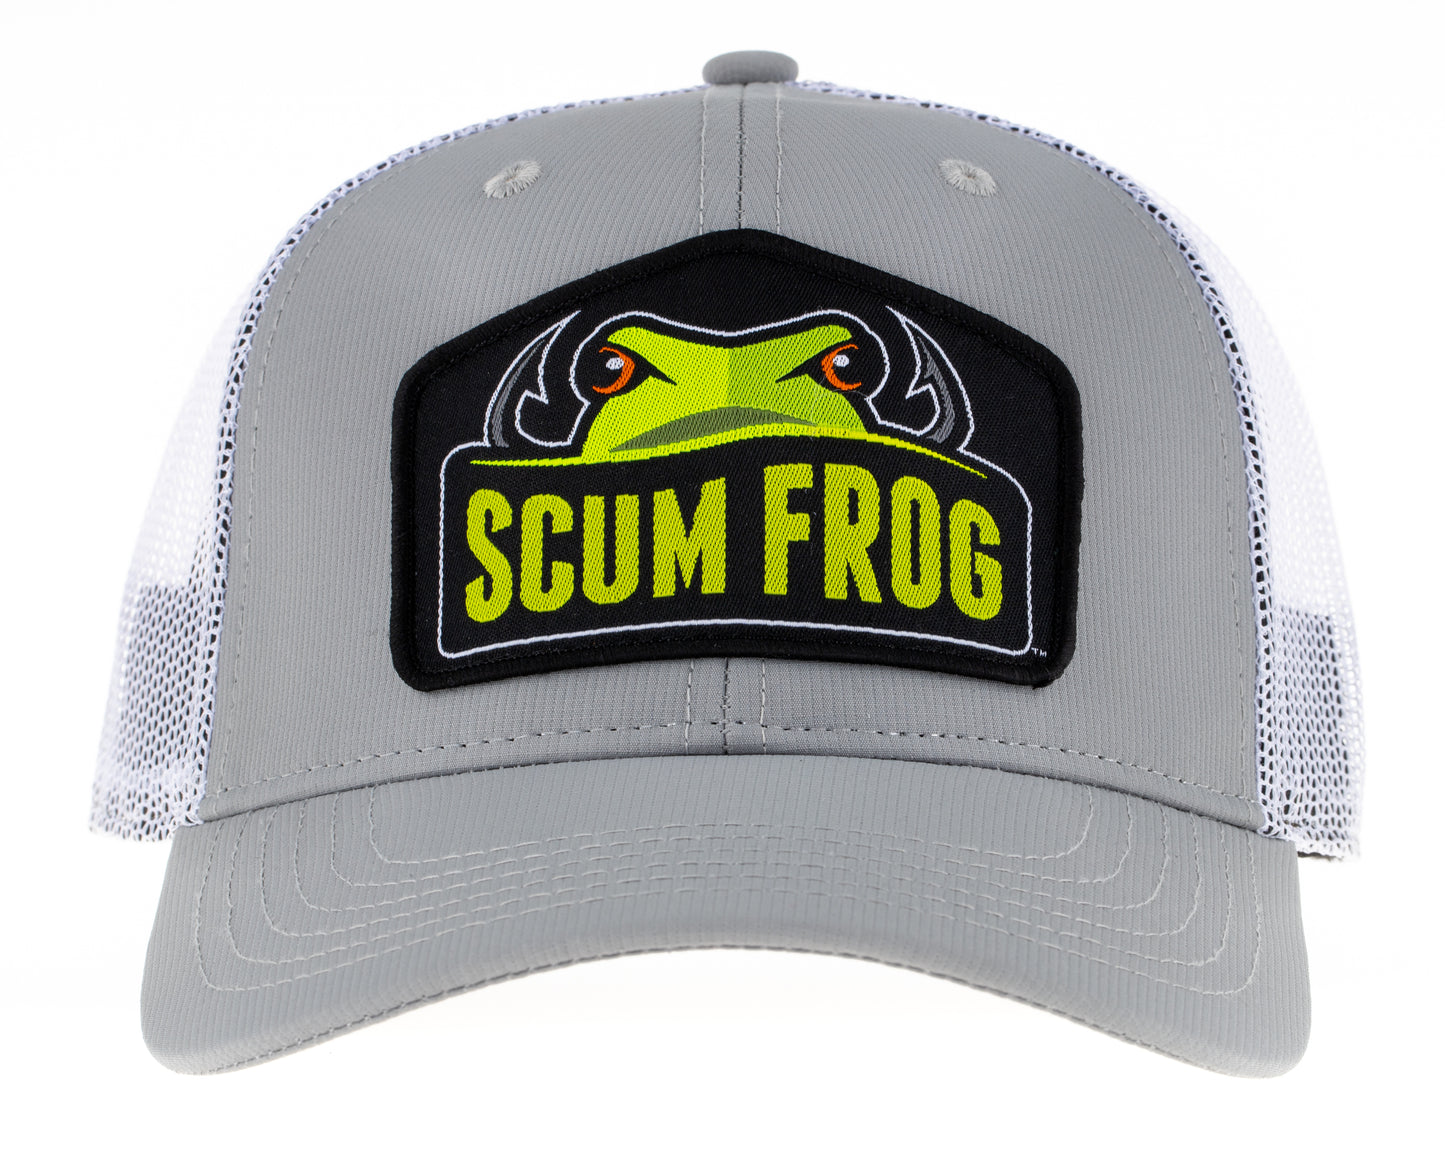 Scum Frog Hat